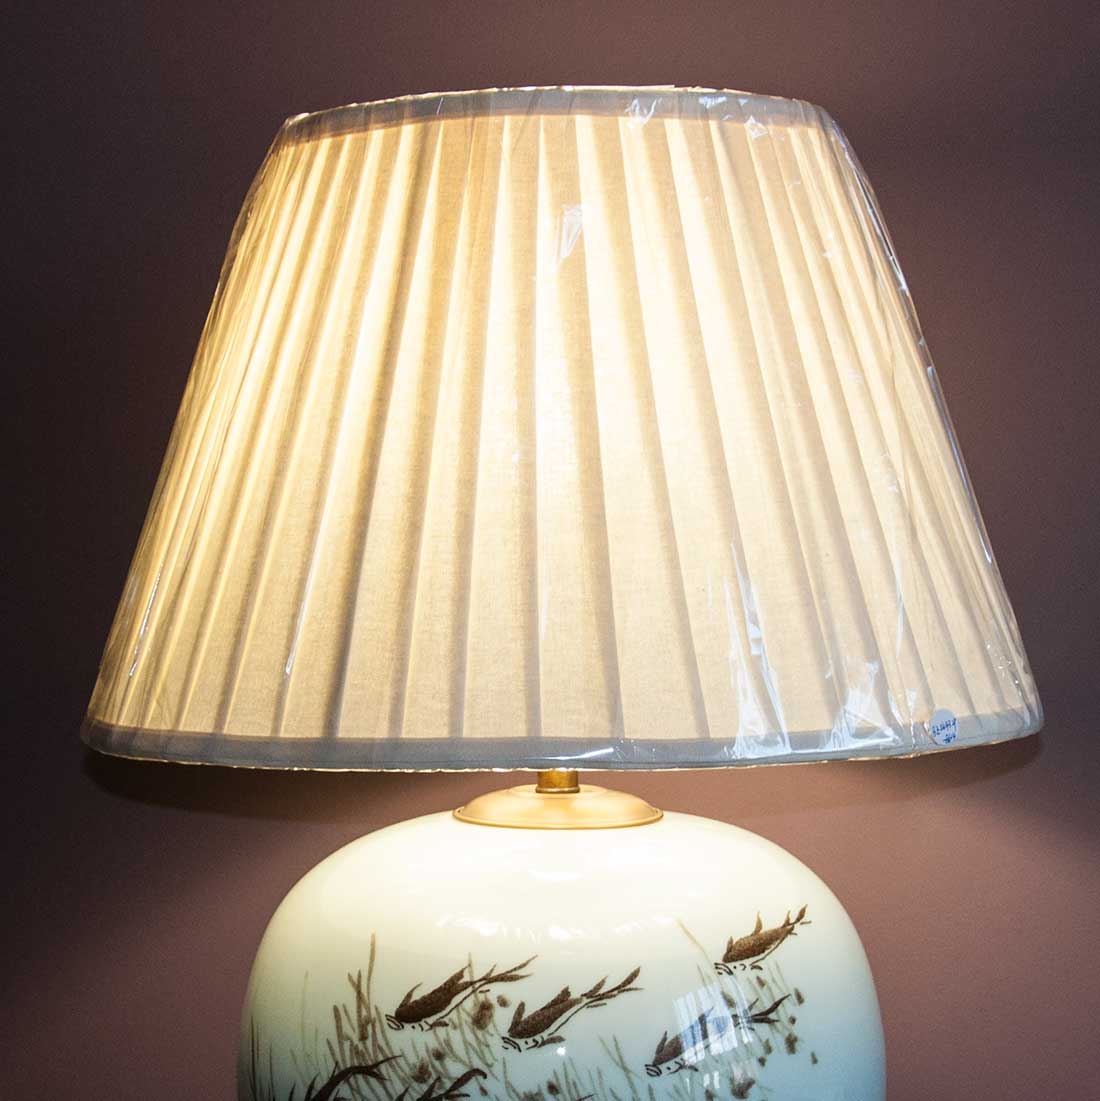 Лампа настольная, фарфоровая "АКВАРИУМ" купить в интернет-студии декора / шоурум | ChinaHouse.Studio